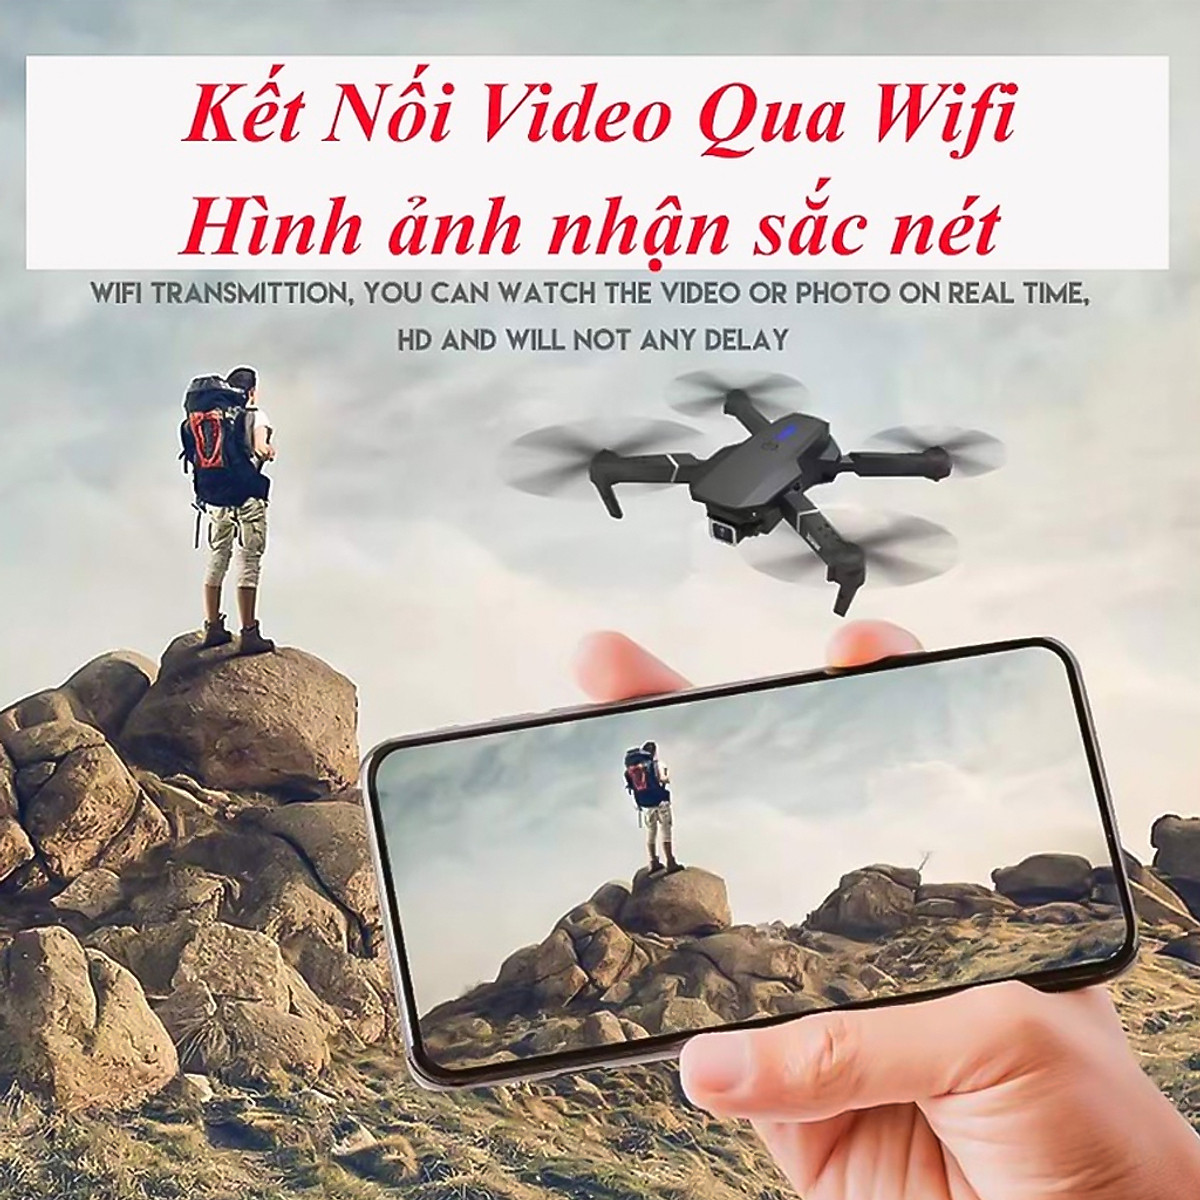 Máy bay Flycam mini 4k giá rẻ Drone E88 Pro 2 camera kép kết nối WIFI 2.4GHZ, ĐỘ PHÂN GIẢI 4K, Bay cao 100m, nhào lộn 360 độ thích làm đồ chơi cho bé Tặng túi đựng chống sốc - Hàng chính hãng